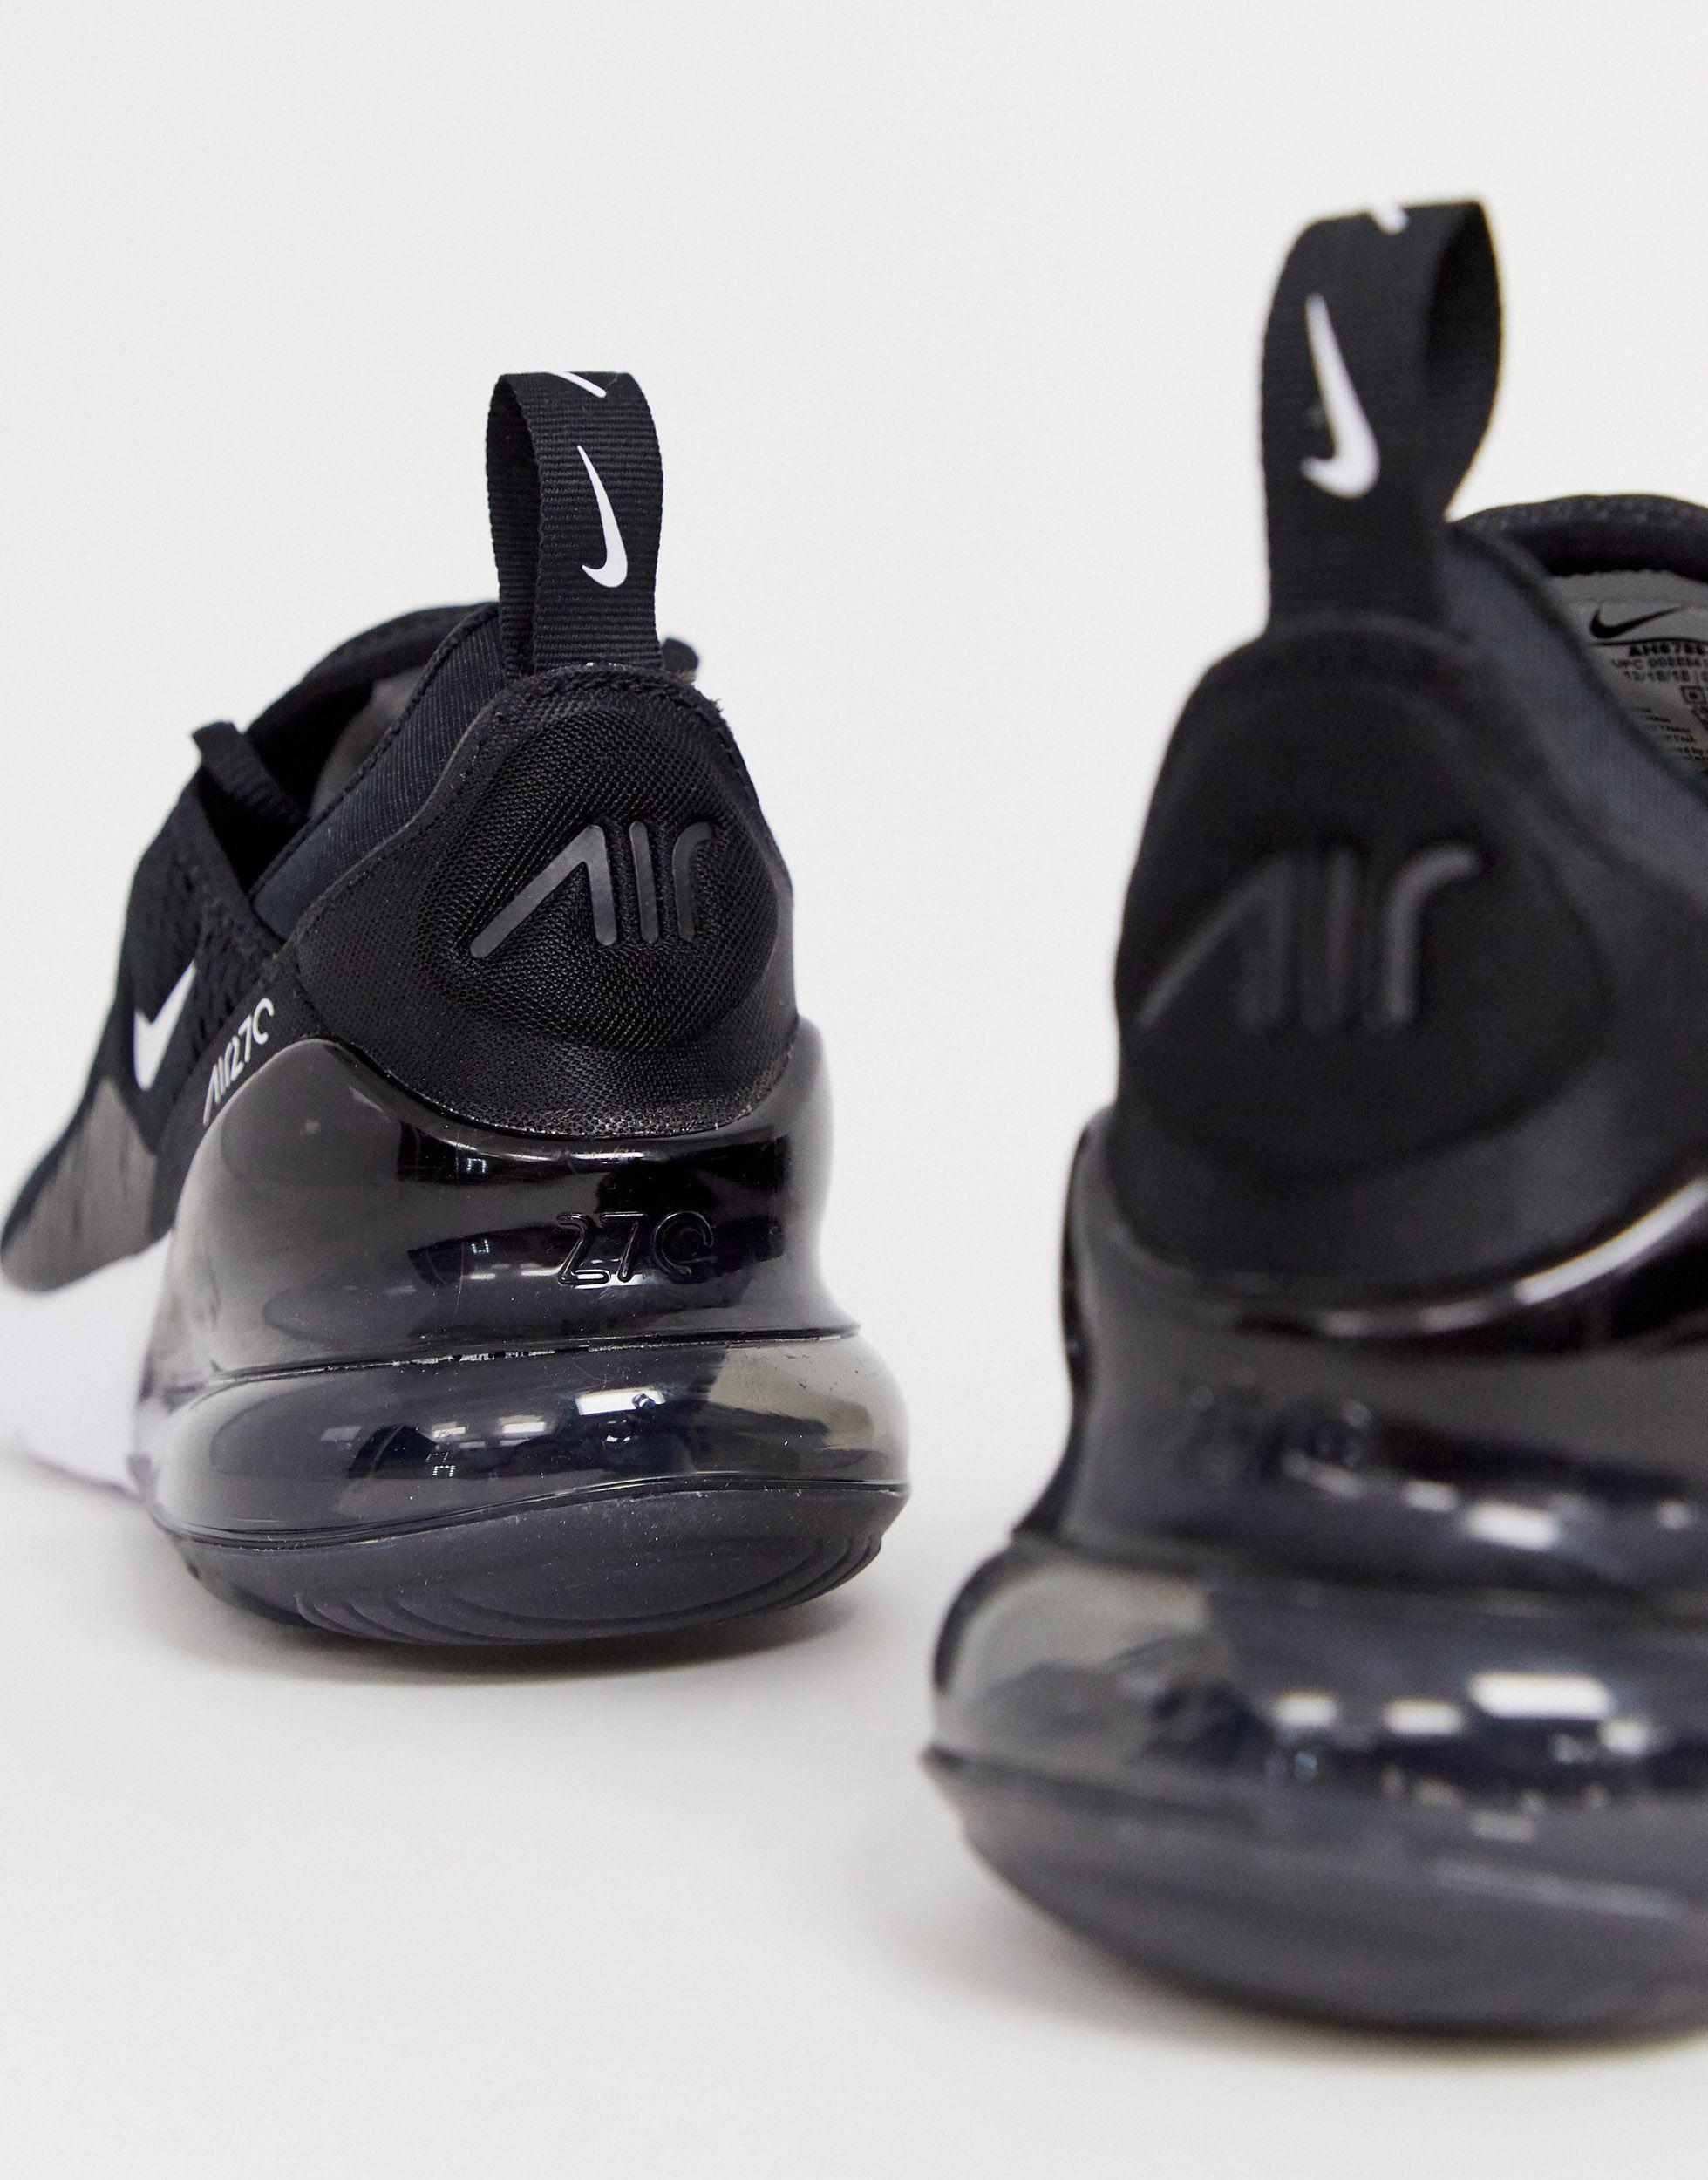 Nike Air Max 270 sneakers in triple black